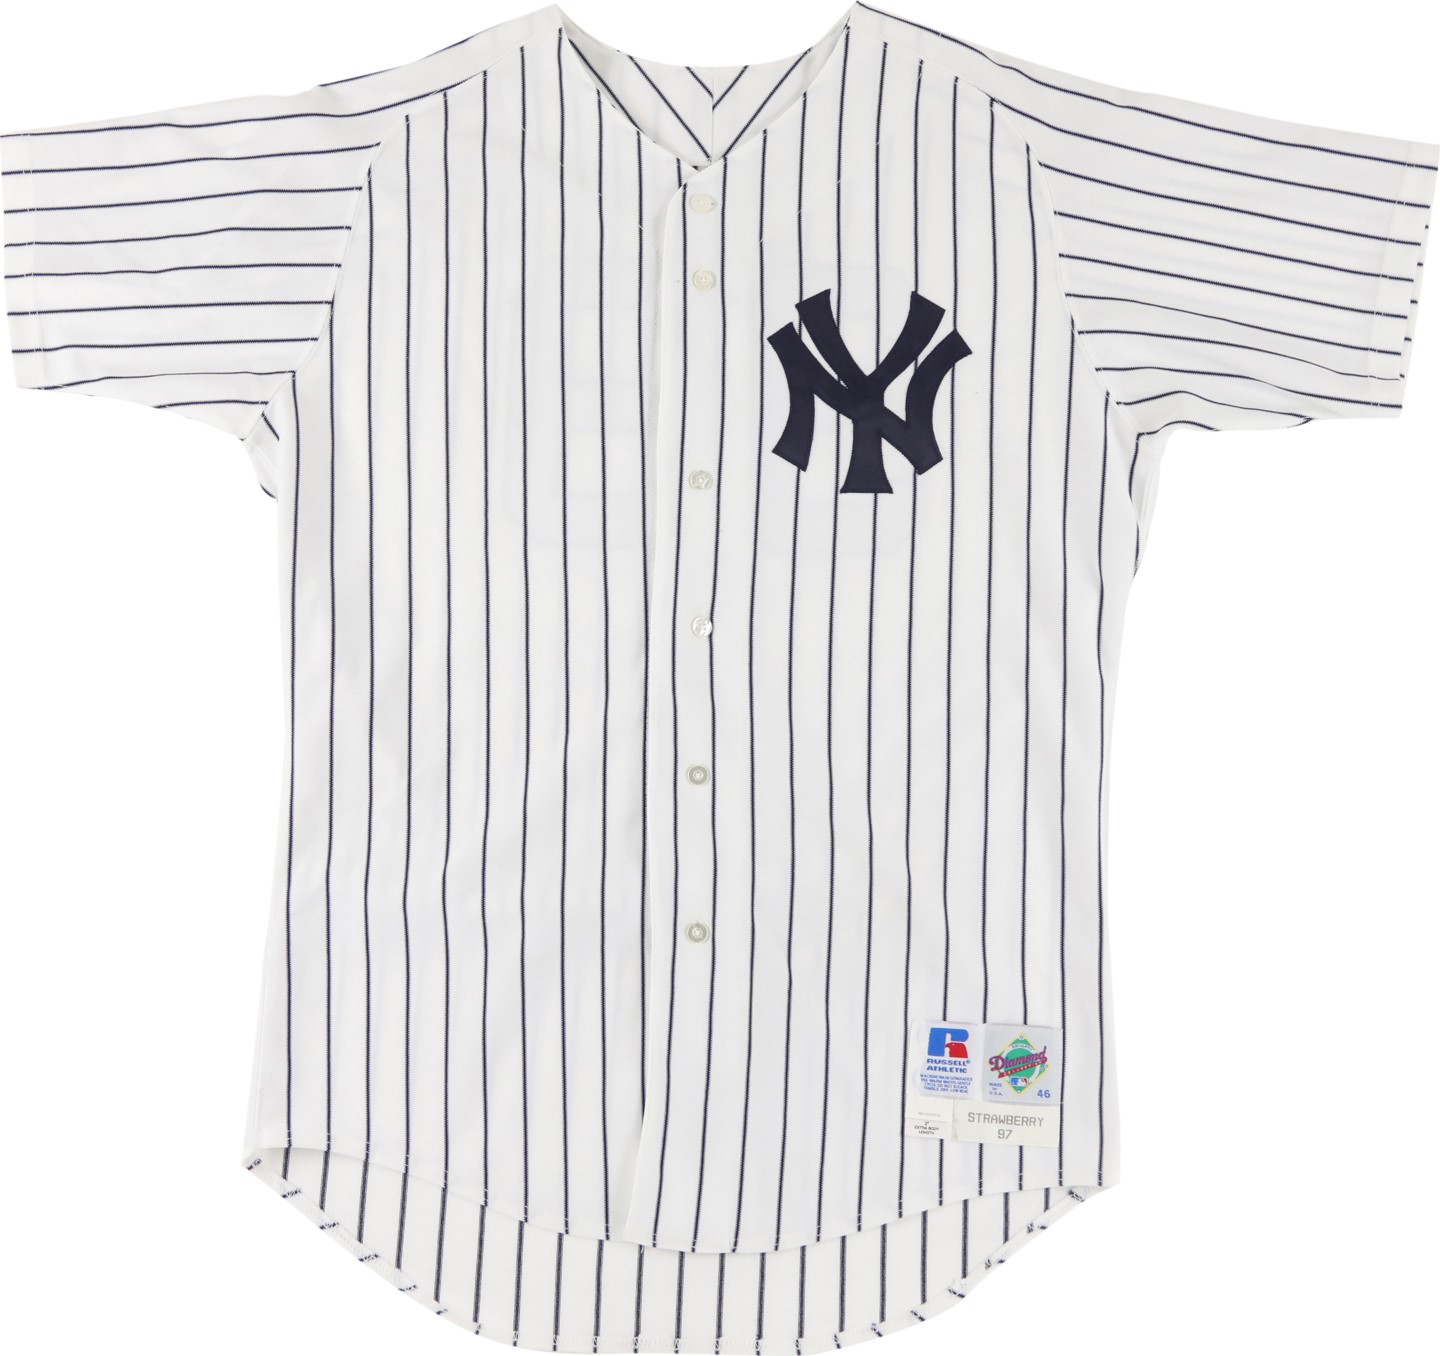 Baseball Equipment - 1997 Daryl Strawberry New York Yankees Game Worn Jersey